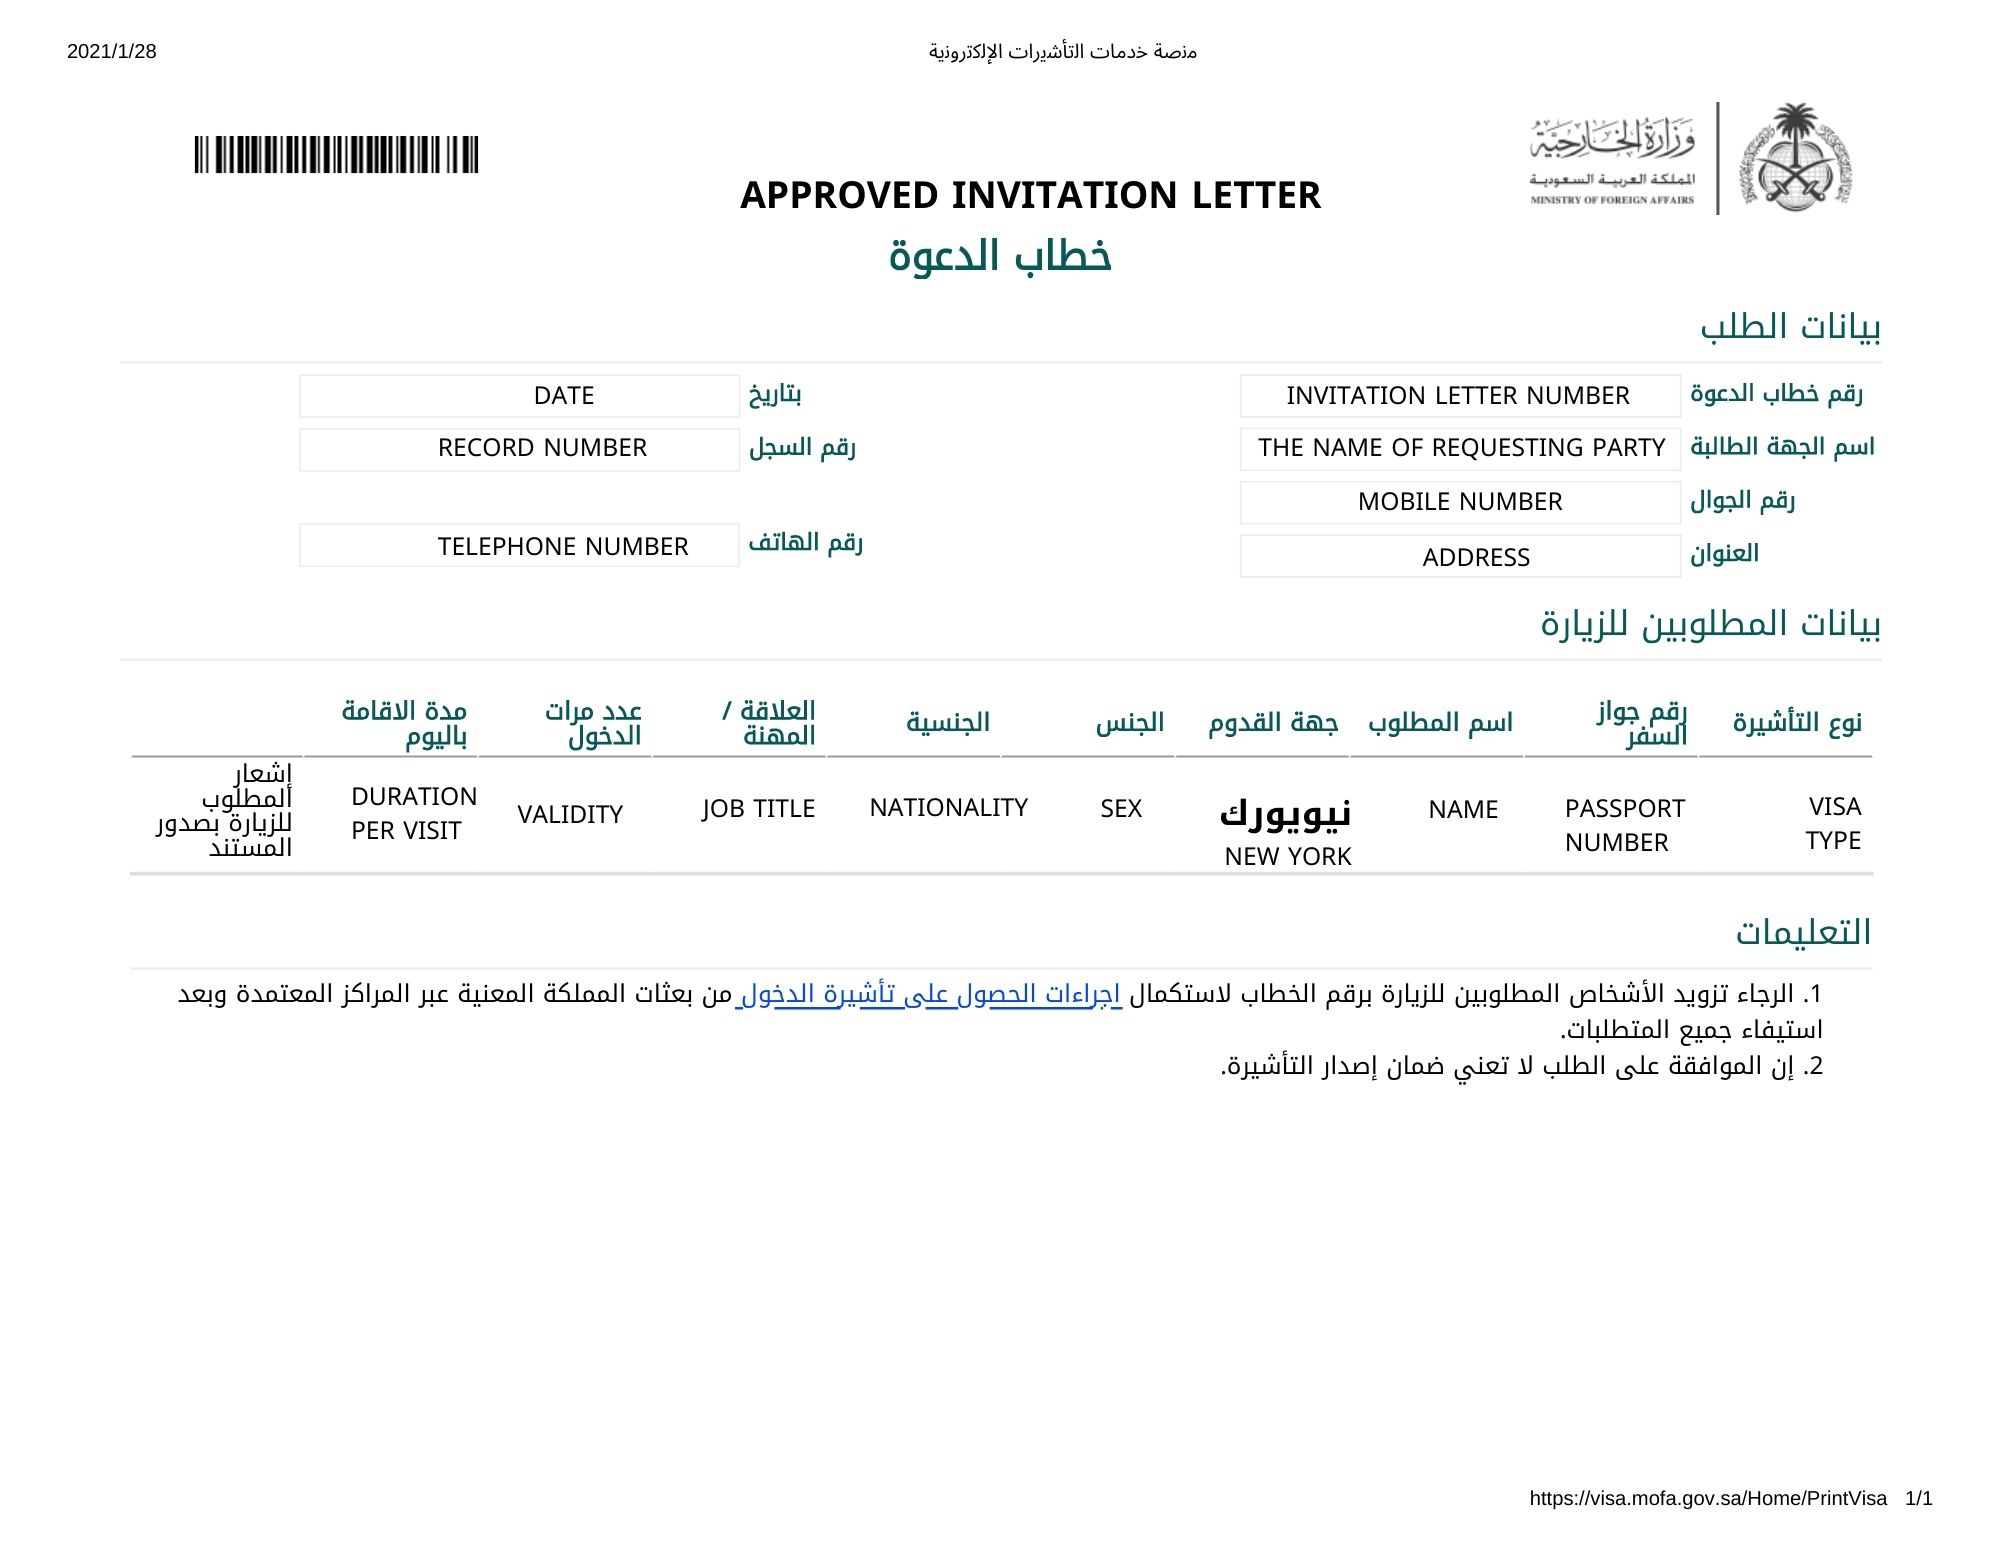 hungary visit visa from saudi arabia